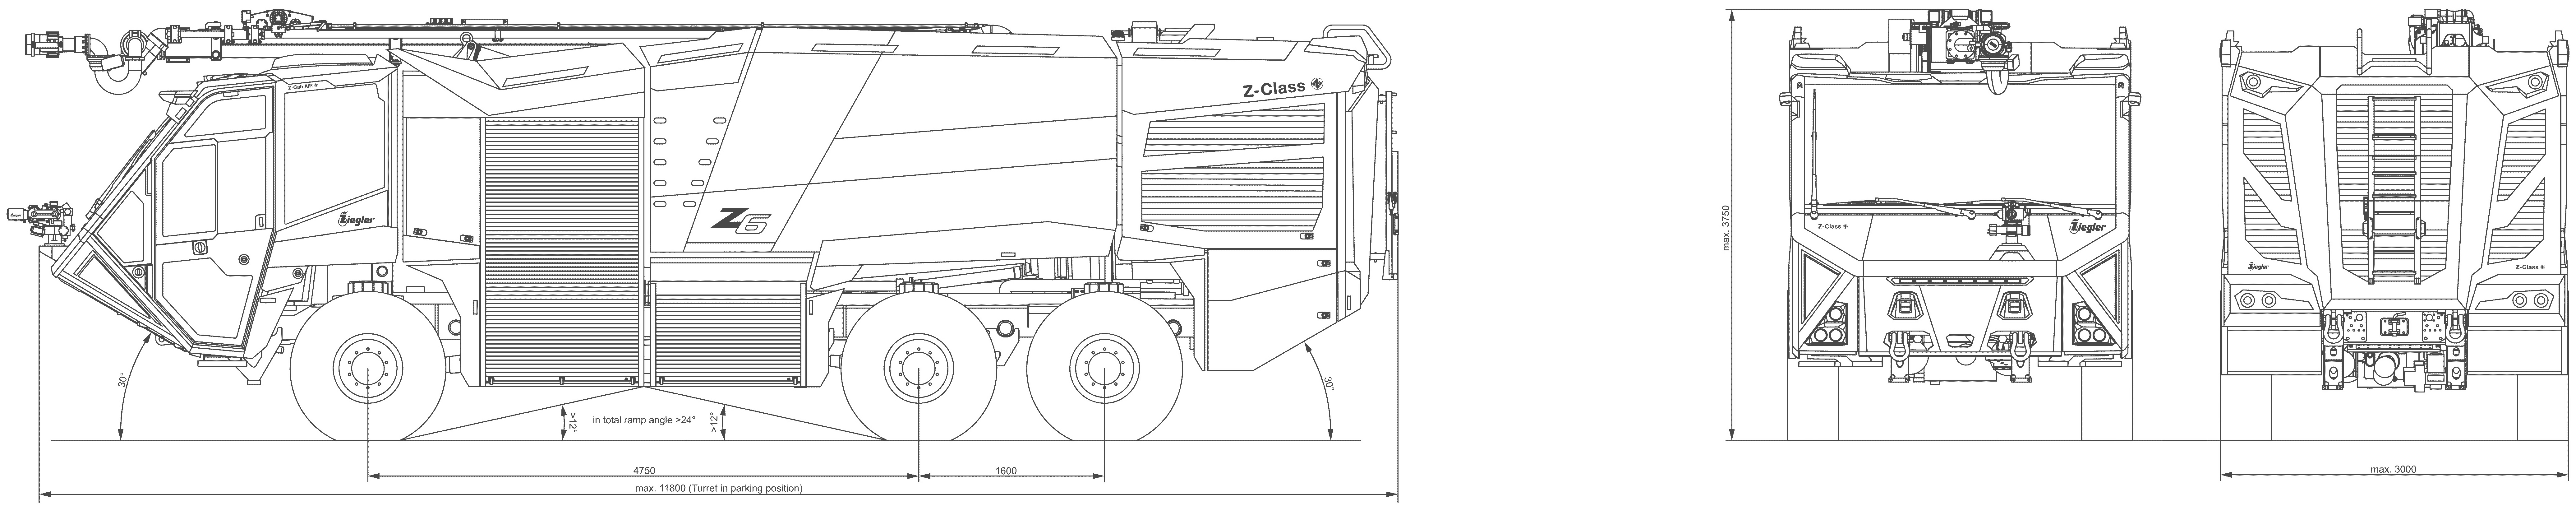 Ziegler Z6 airport fire truck blueprint